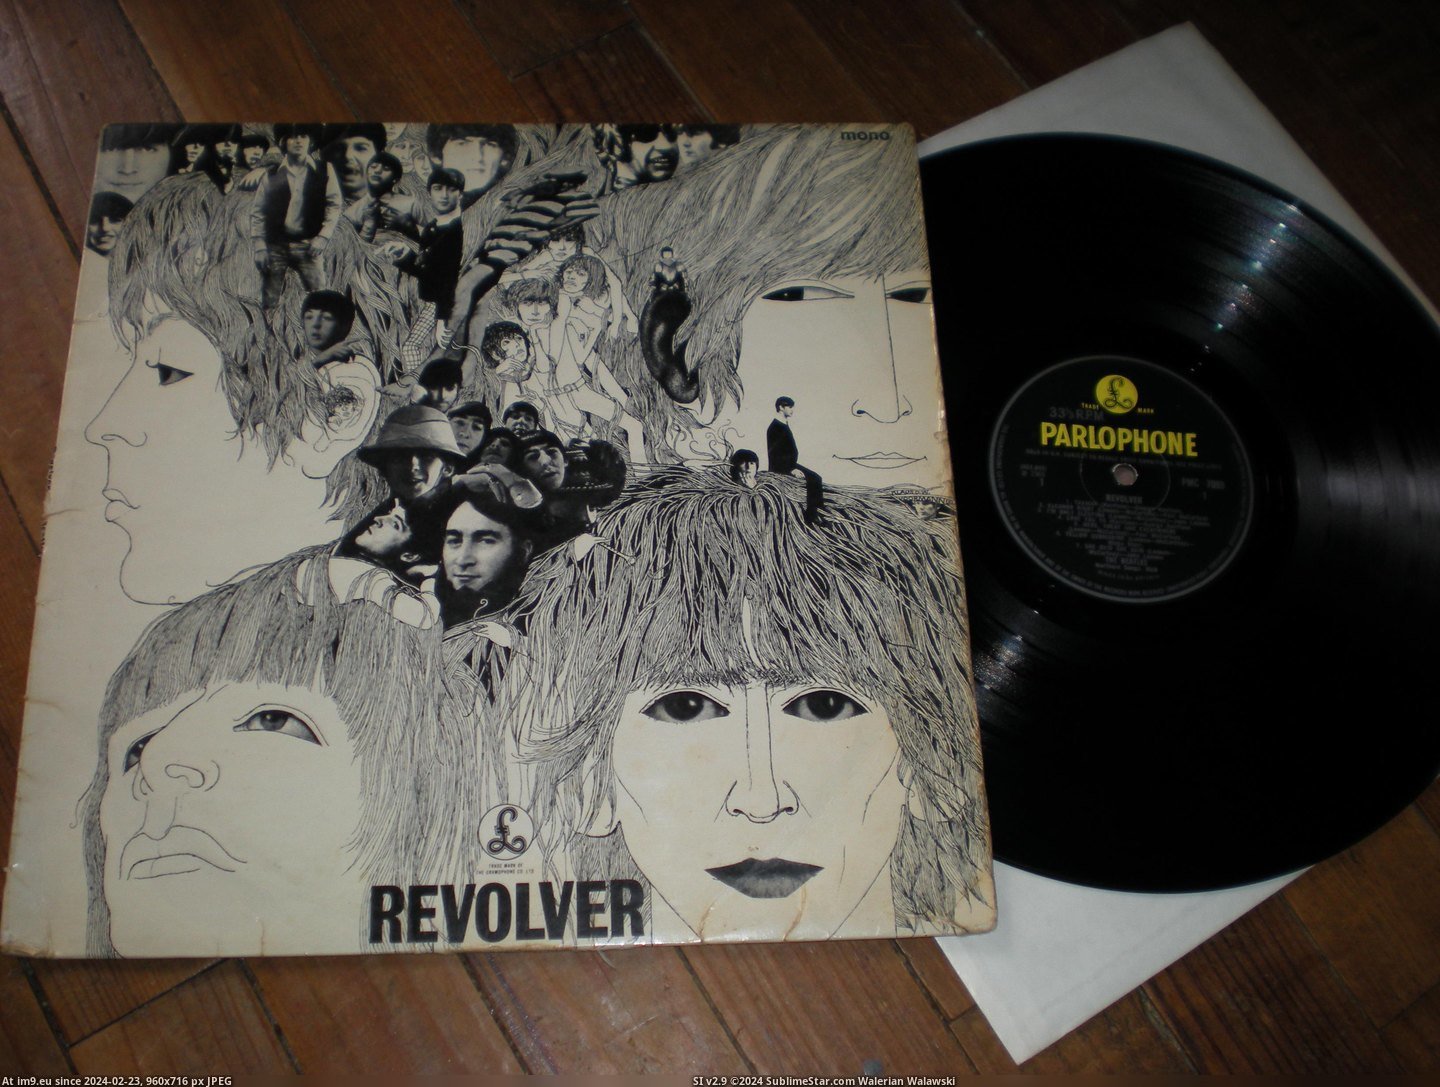  #Revolver  Revolver -2-3 5 Pic. (Obraz z album new 1))